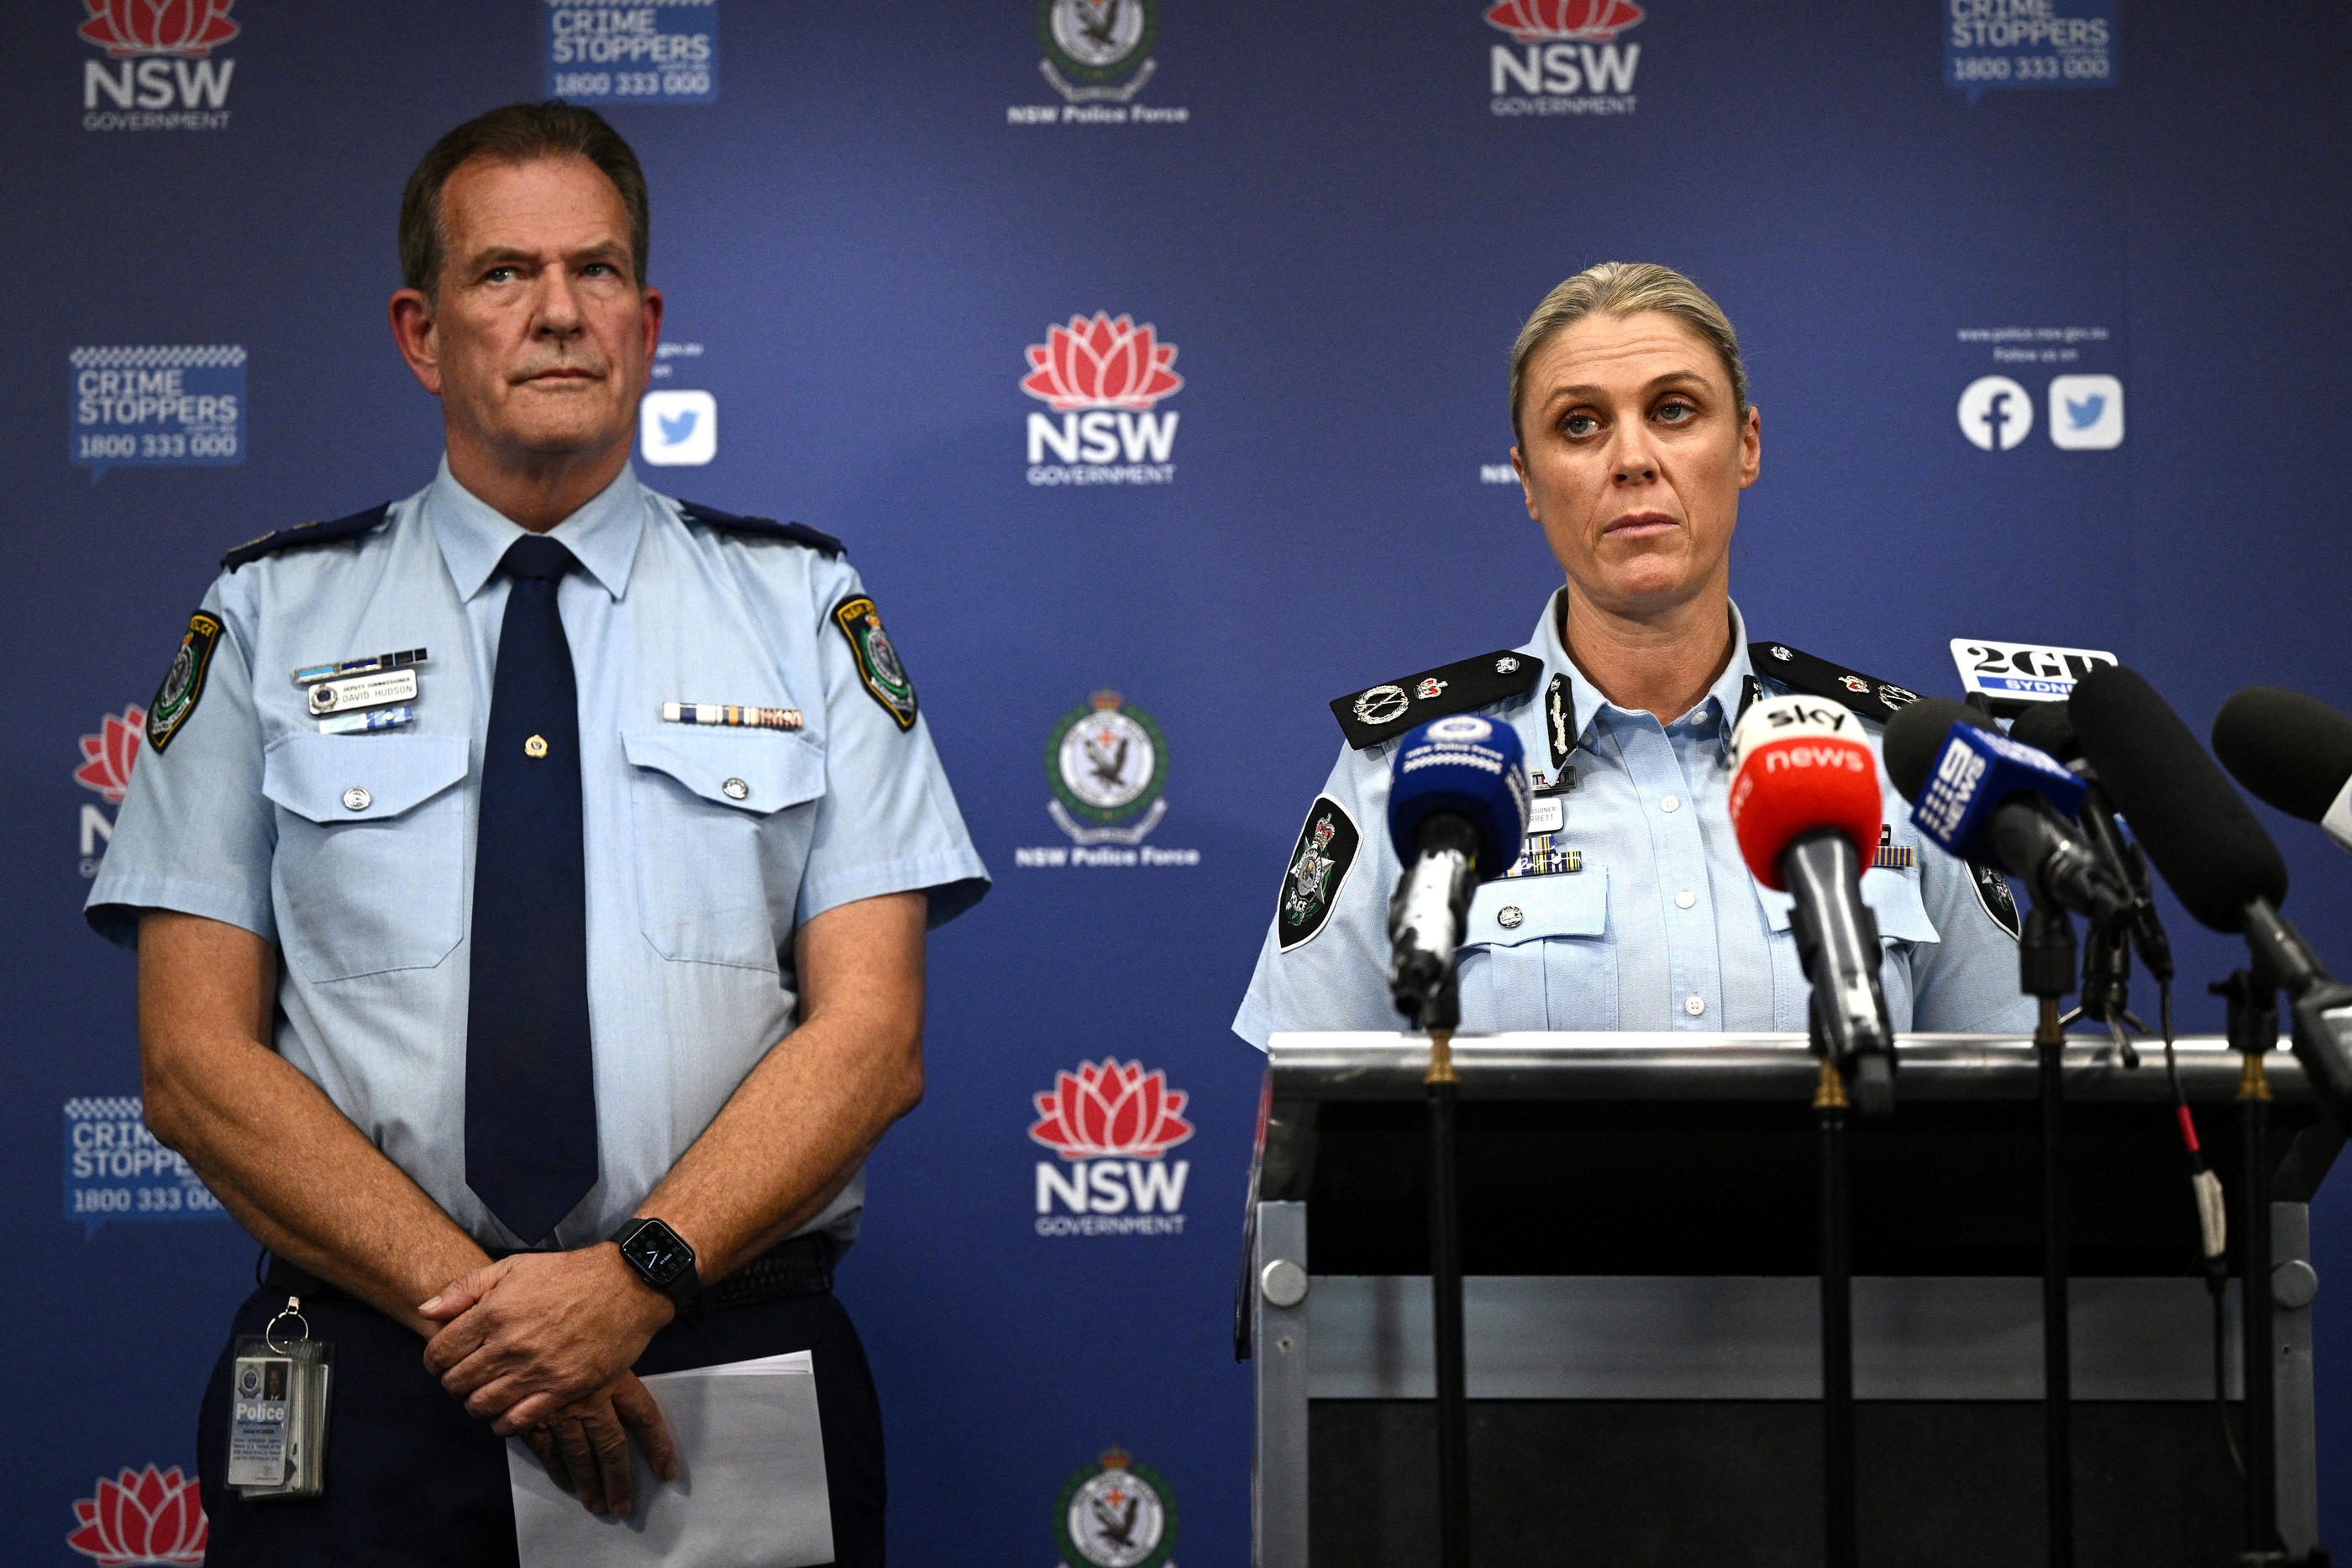 Dave Hudson et Krissy Barrett, membres de la police australienne, ont tenu une conférence de presse ce mercredi à Sydney. Via REUTERS/AAP/Dan Himbrechts